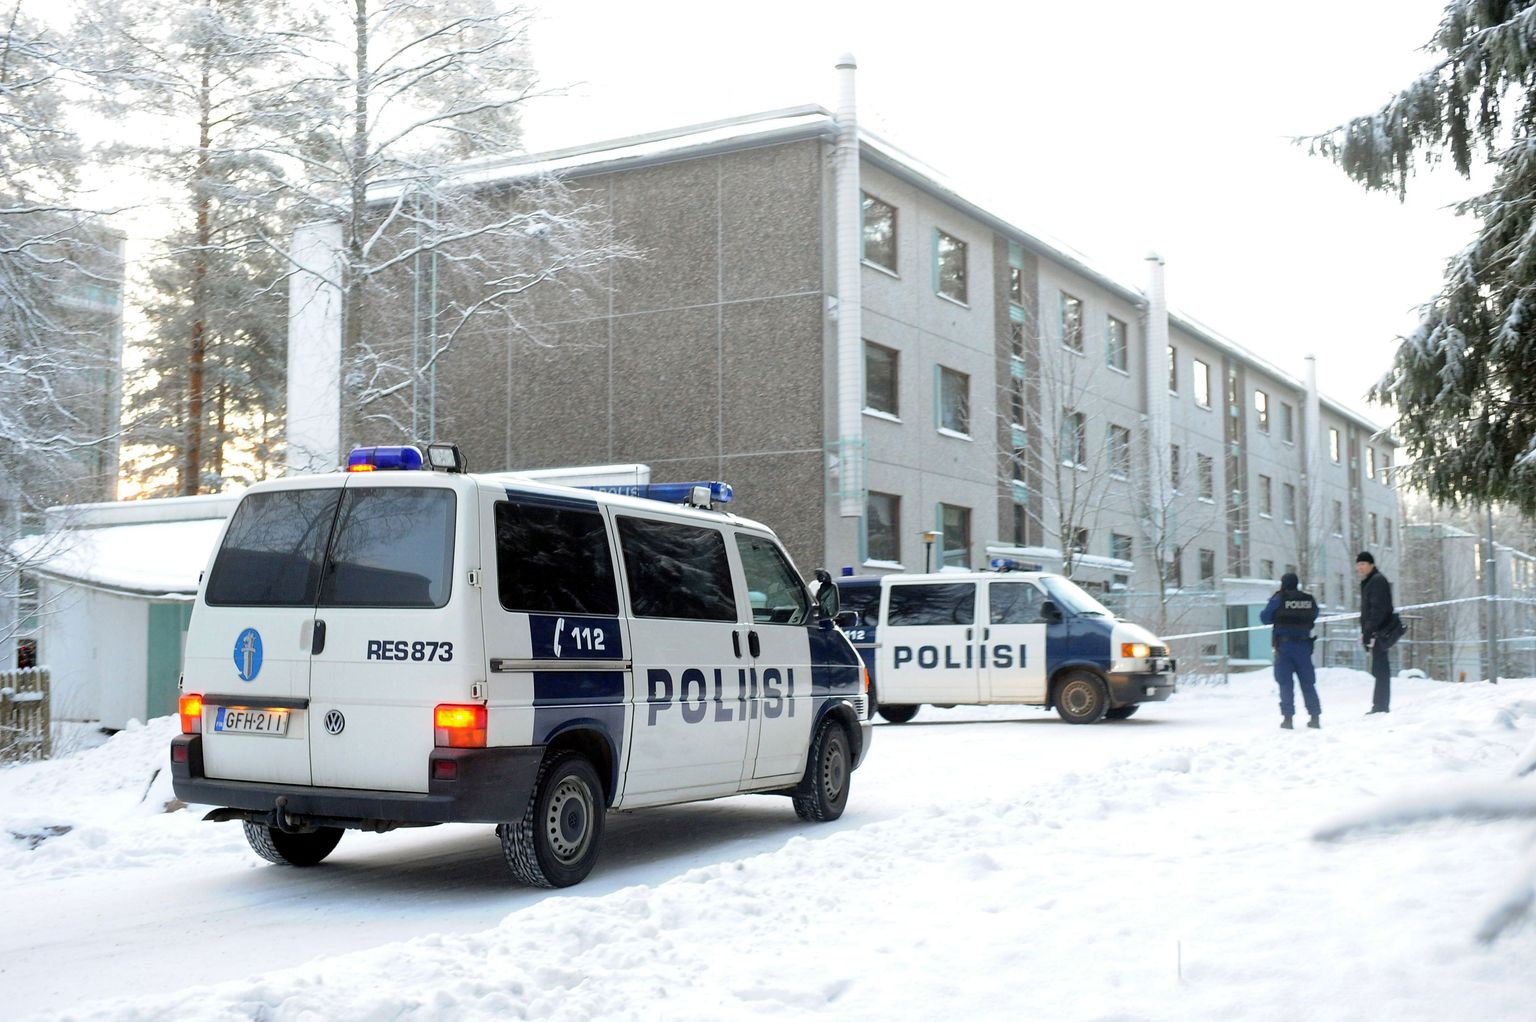 Kortermaja Jyväskyläs Pupuhuhta linnaosas, kus tulistamisintsidendis hukkus kolm meest.